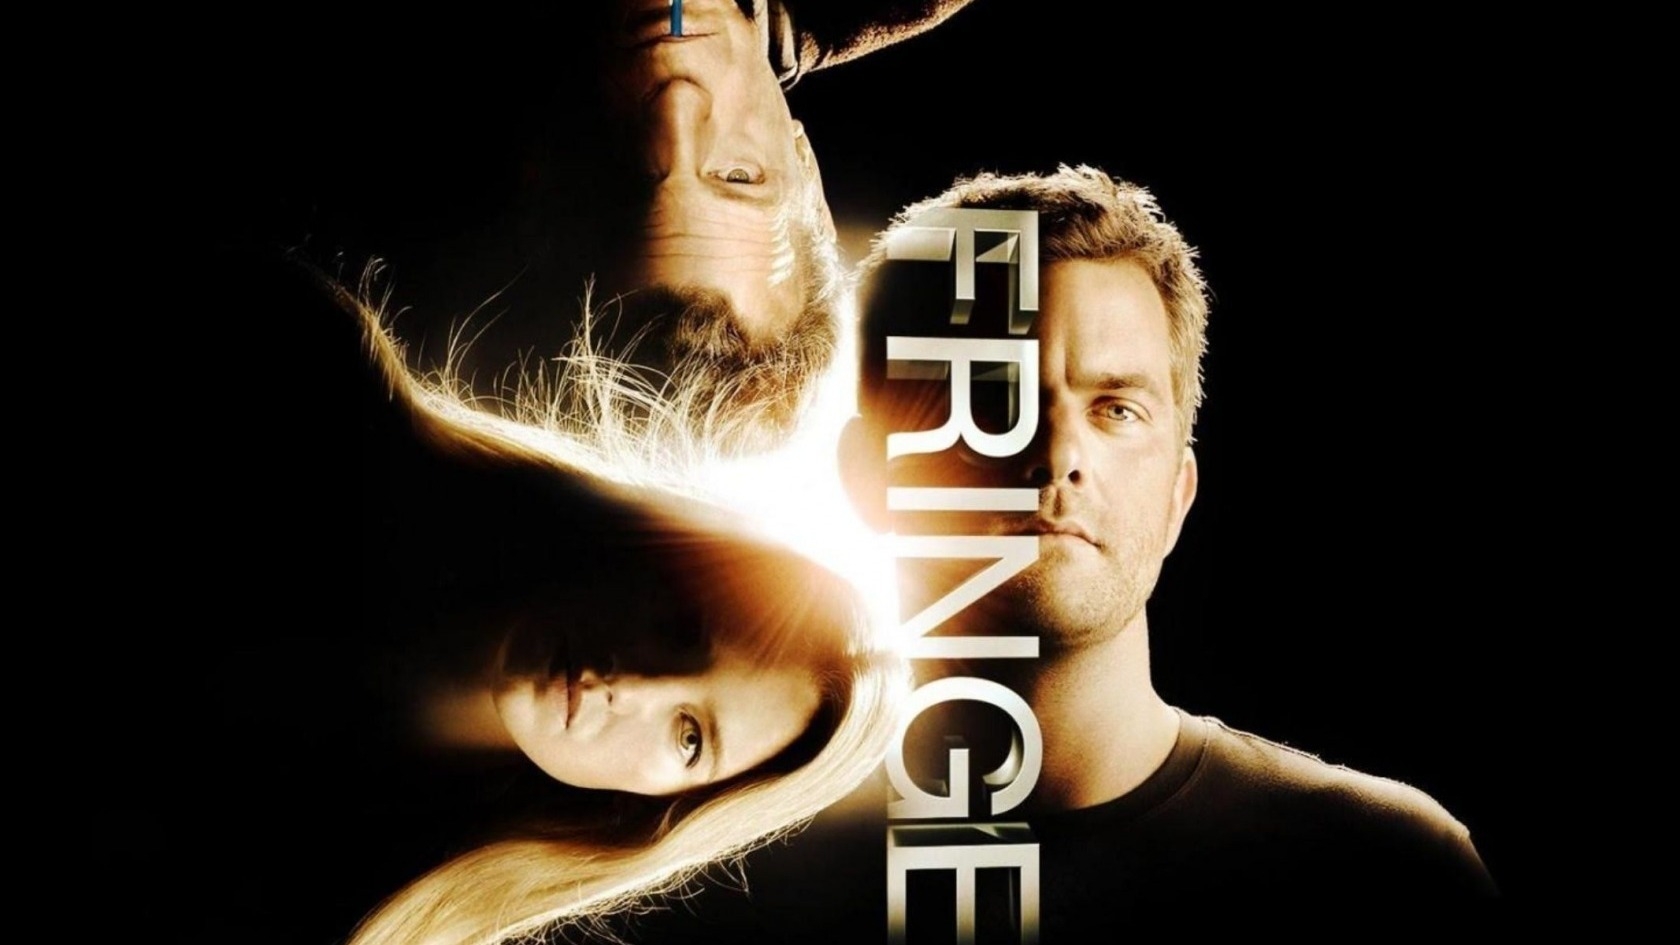 Fringe Poster for 1680 x 945 HDTV resolution